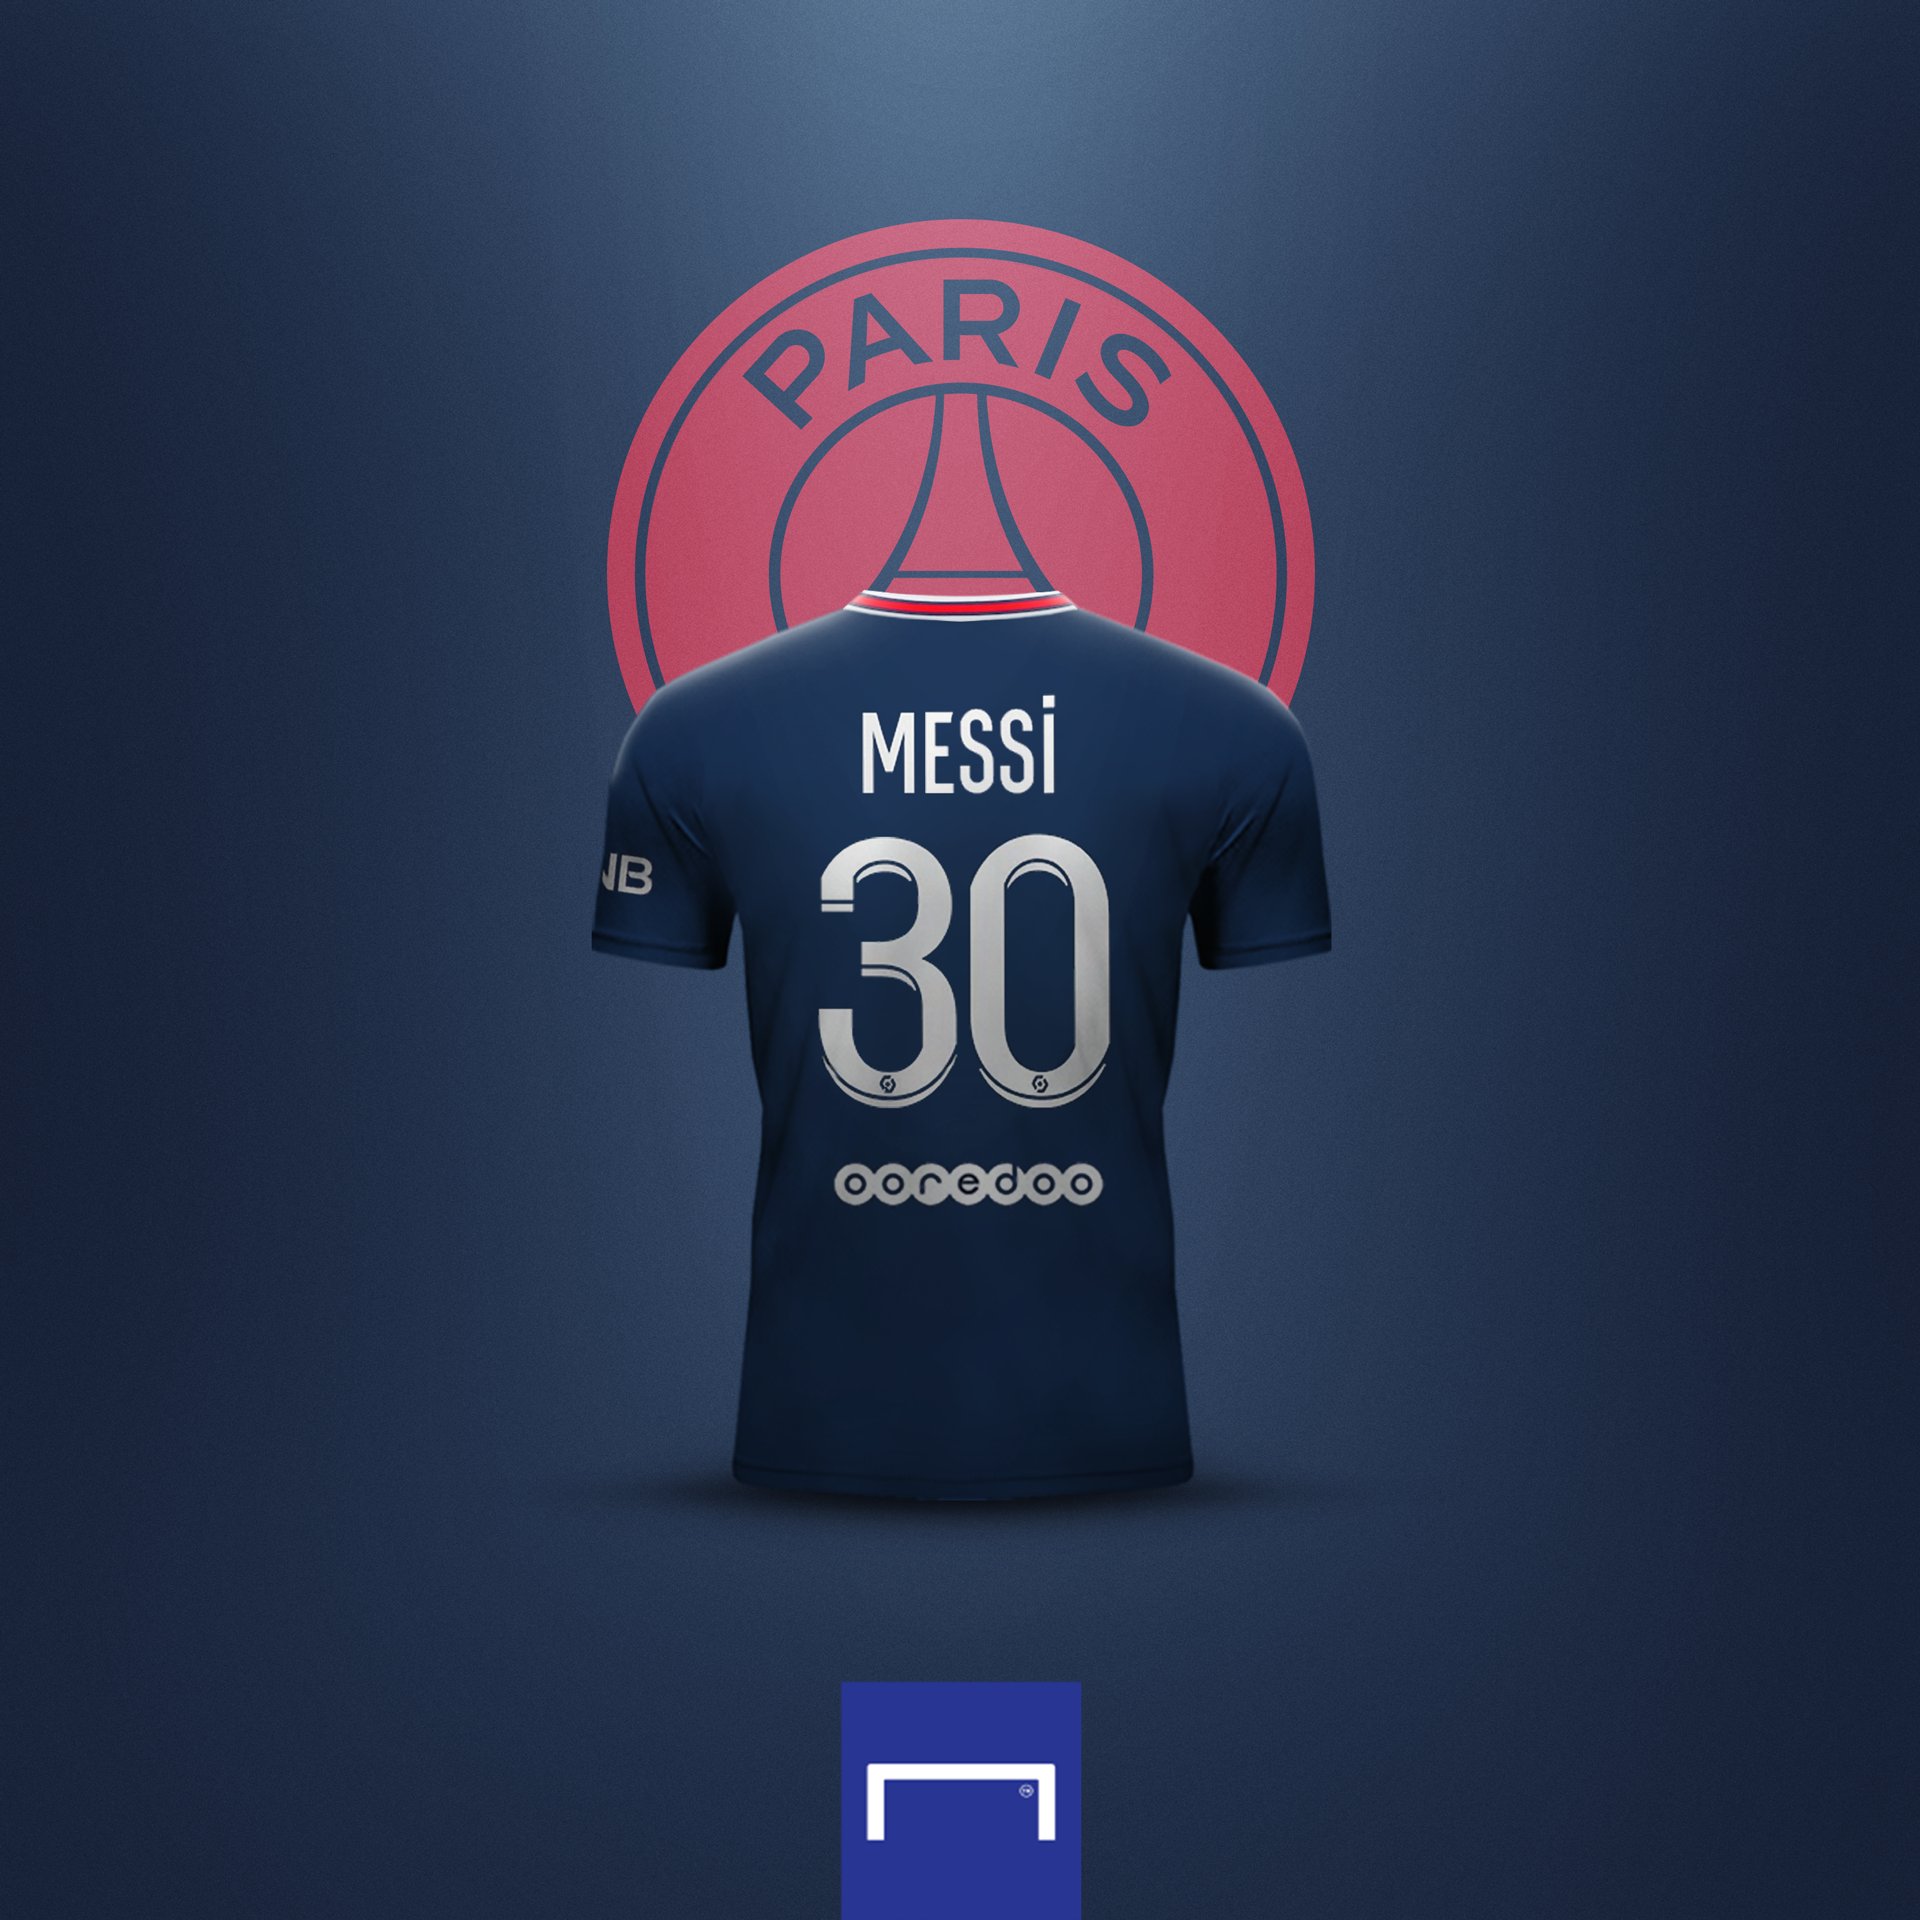 Barçaholics - Lionel Messi number 10 PSG shirt. 🙂 #LJR10